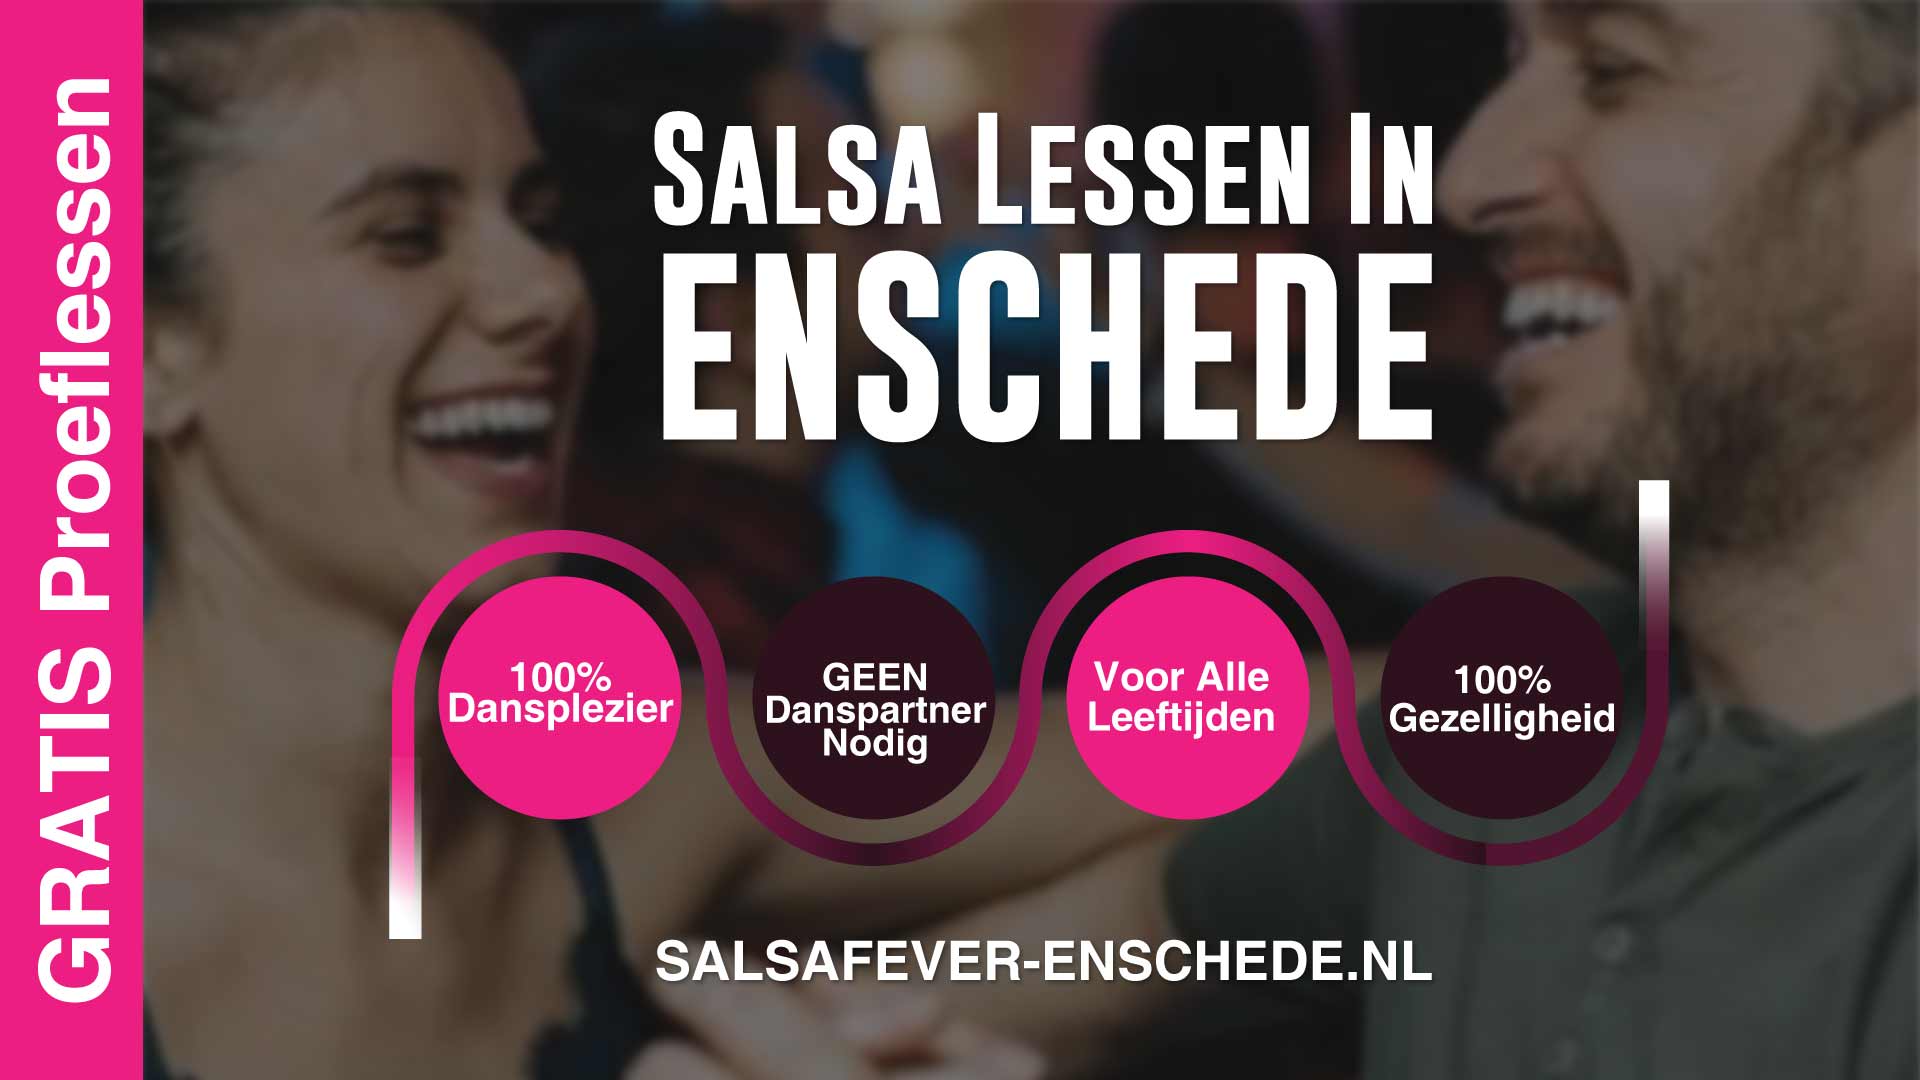 Salsa-Enschede-salsa-lessen-salsa-beginners